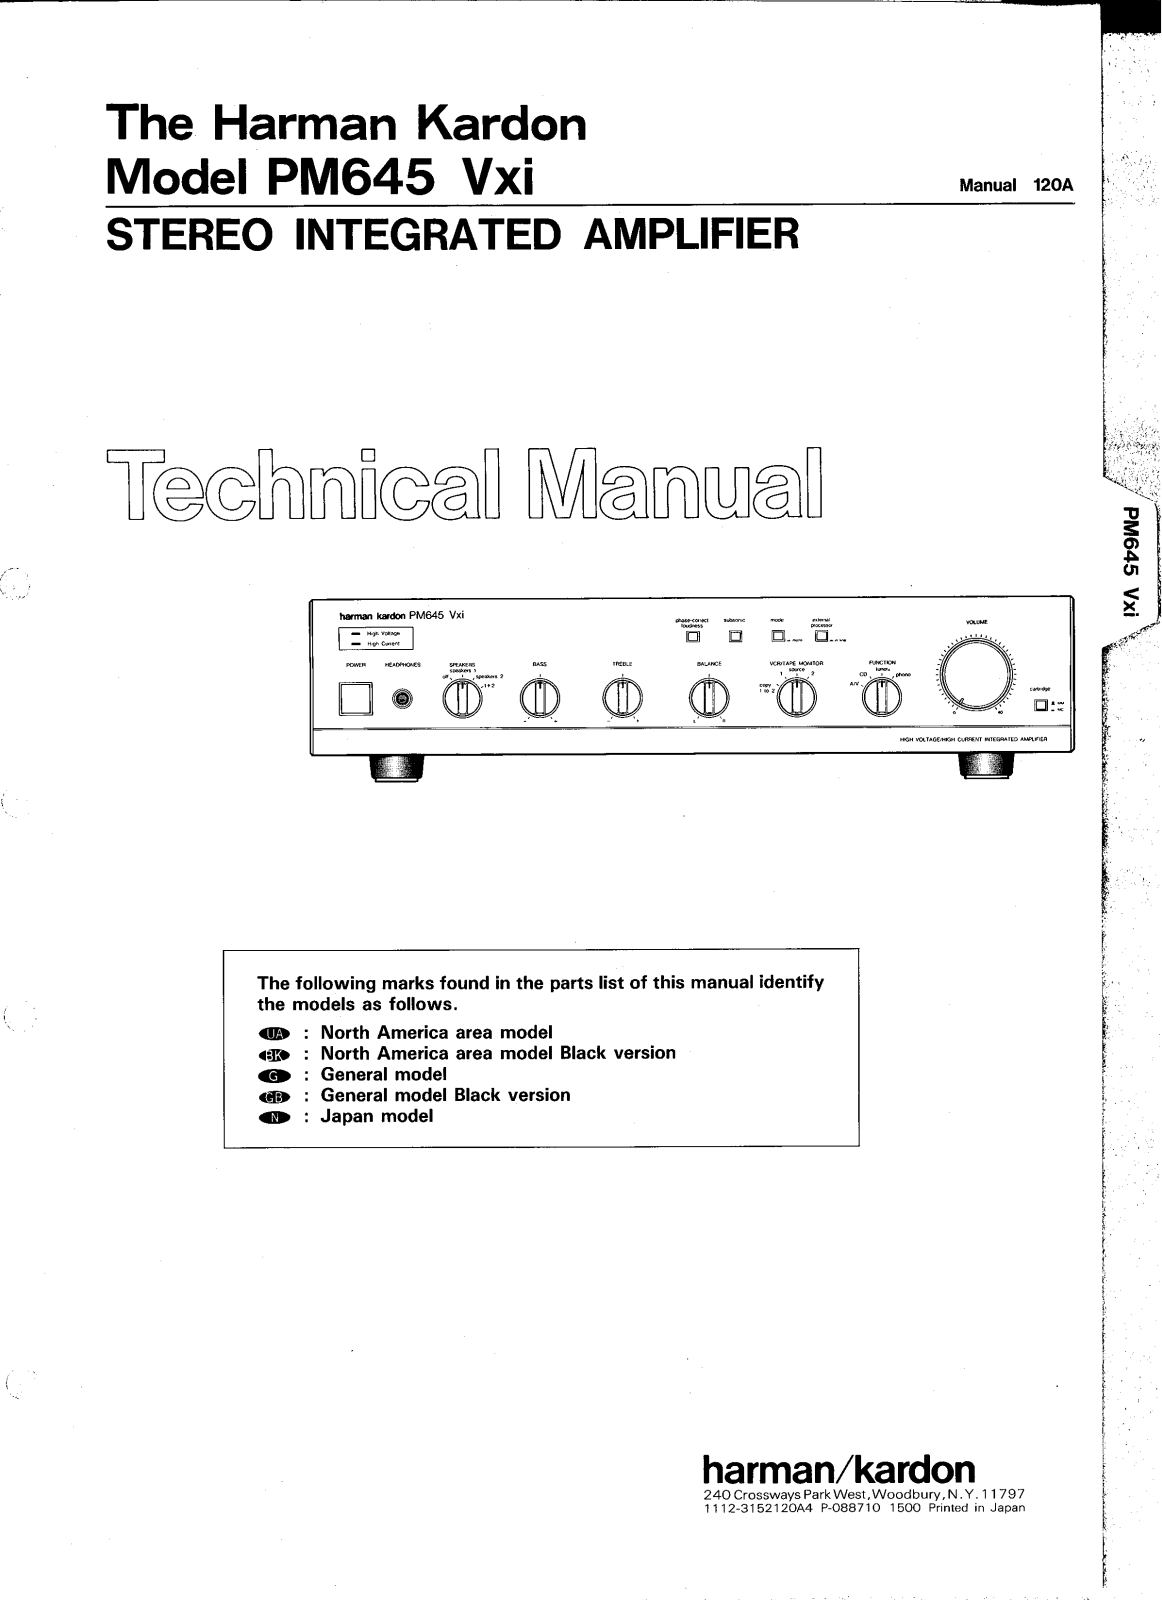 Harman Kardon PM-645-VXI Service manual